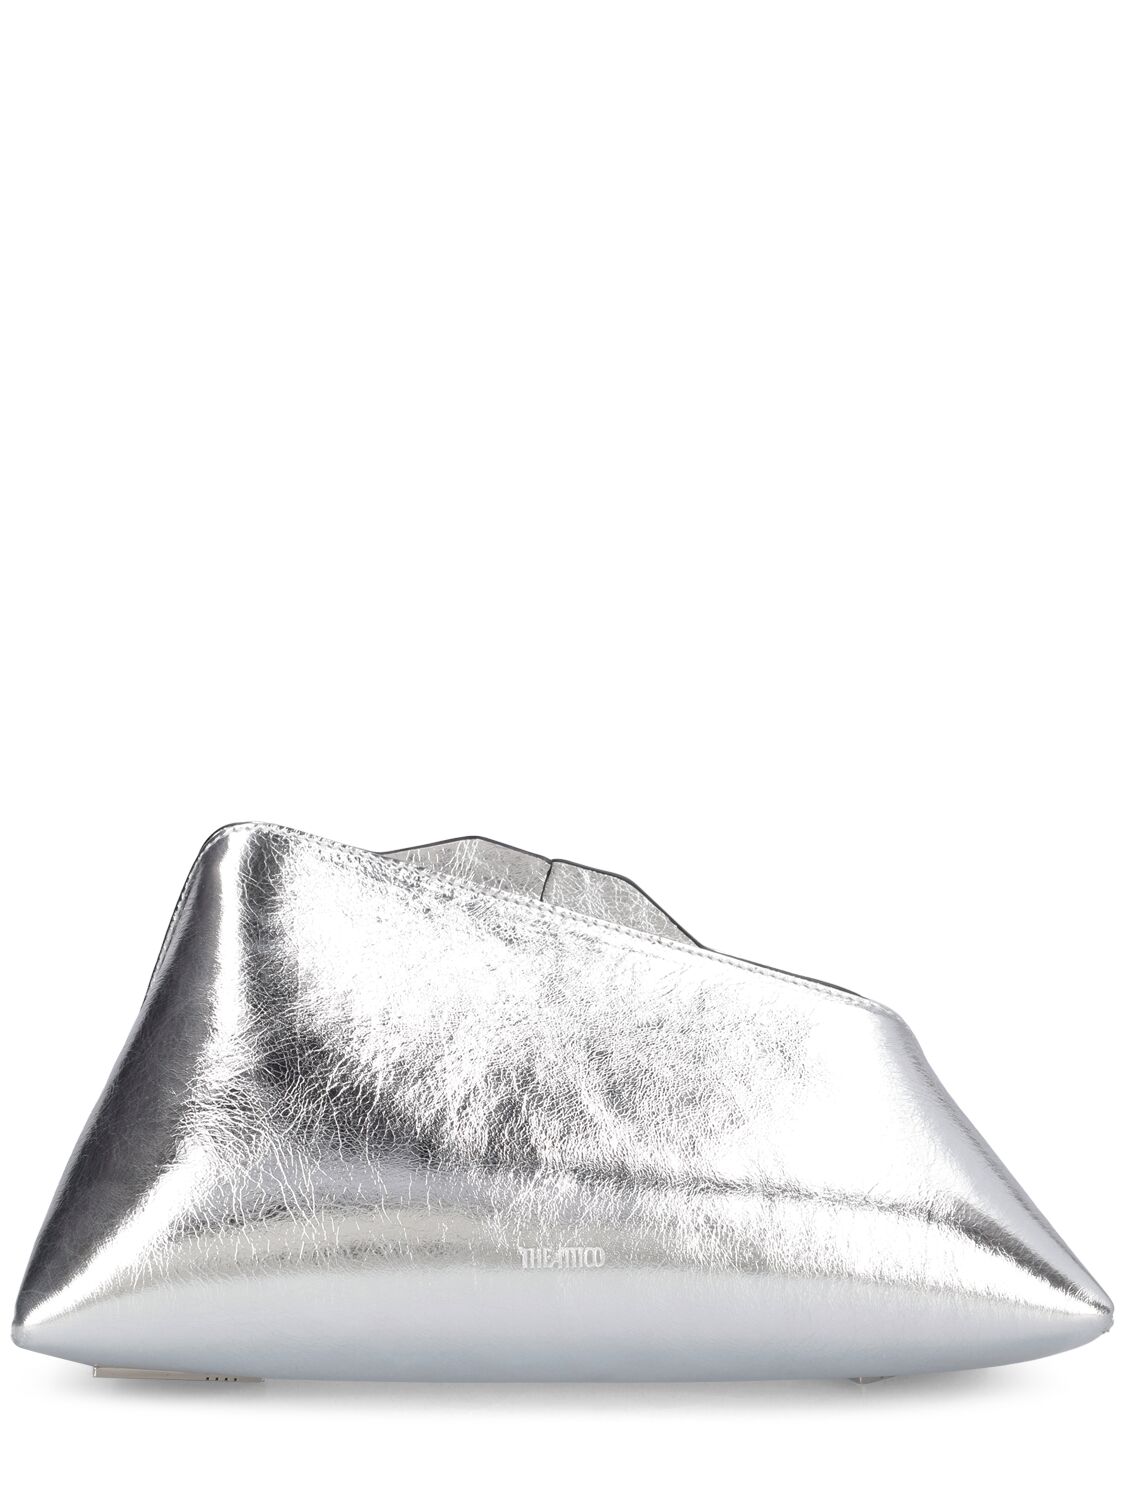 Attico 8:30 Pm Leather Clutch In Silver